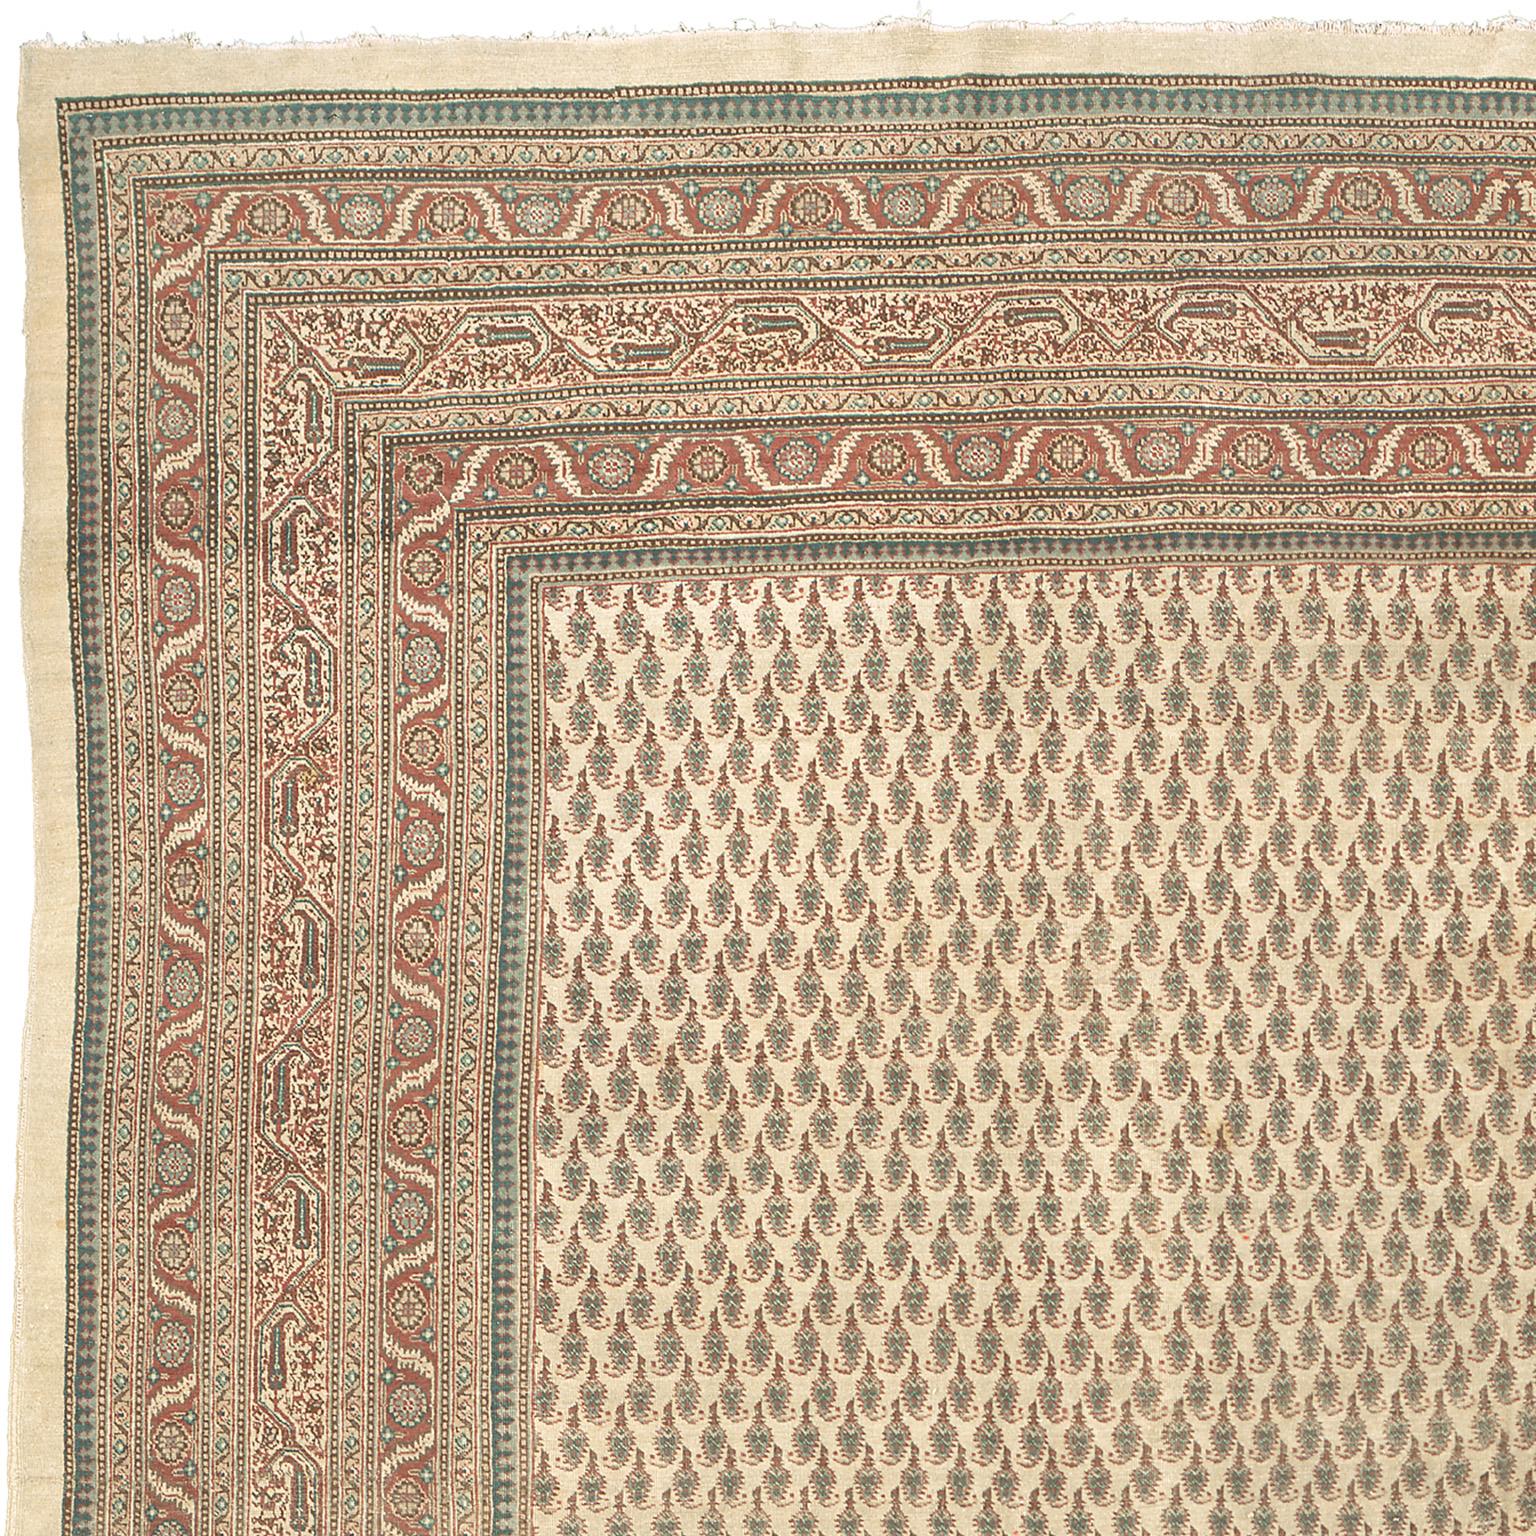 Persia, circa 1890
Size: 19'10